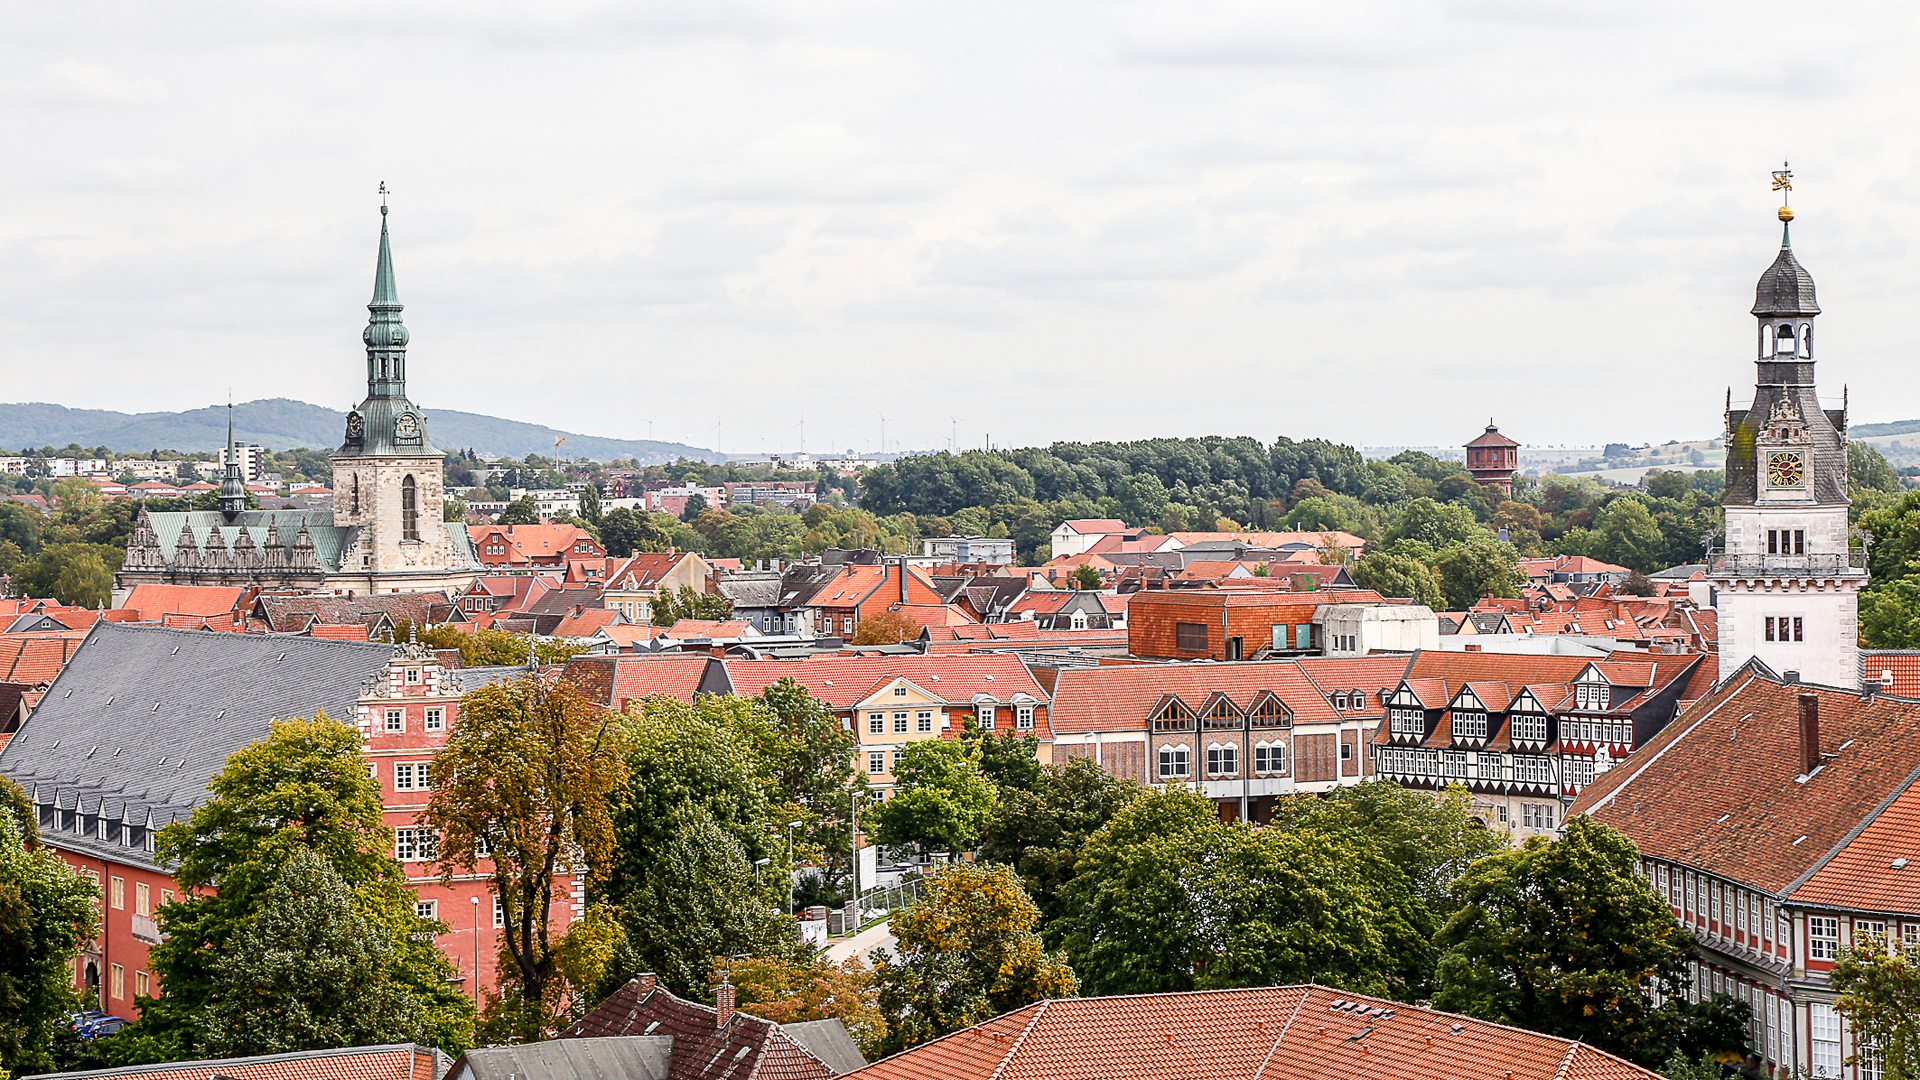 Blick auf mehrere Gebäude der Stadt Wolfenbüttel aus einer erhöhten Position. Hin und wieder tauchen grüne Bäume zwischen den Gebäuden auf.